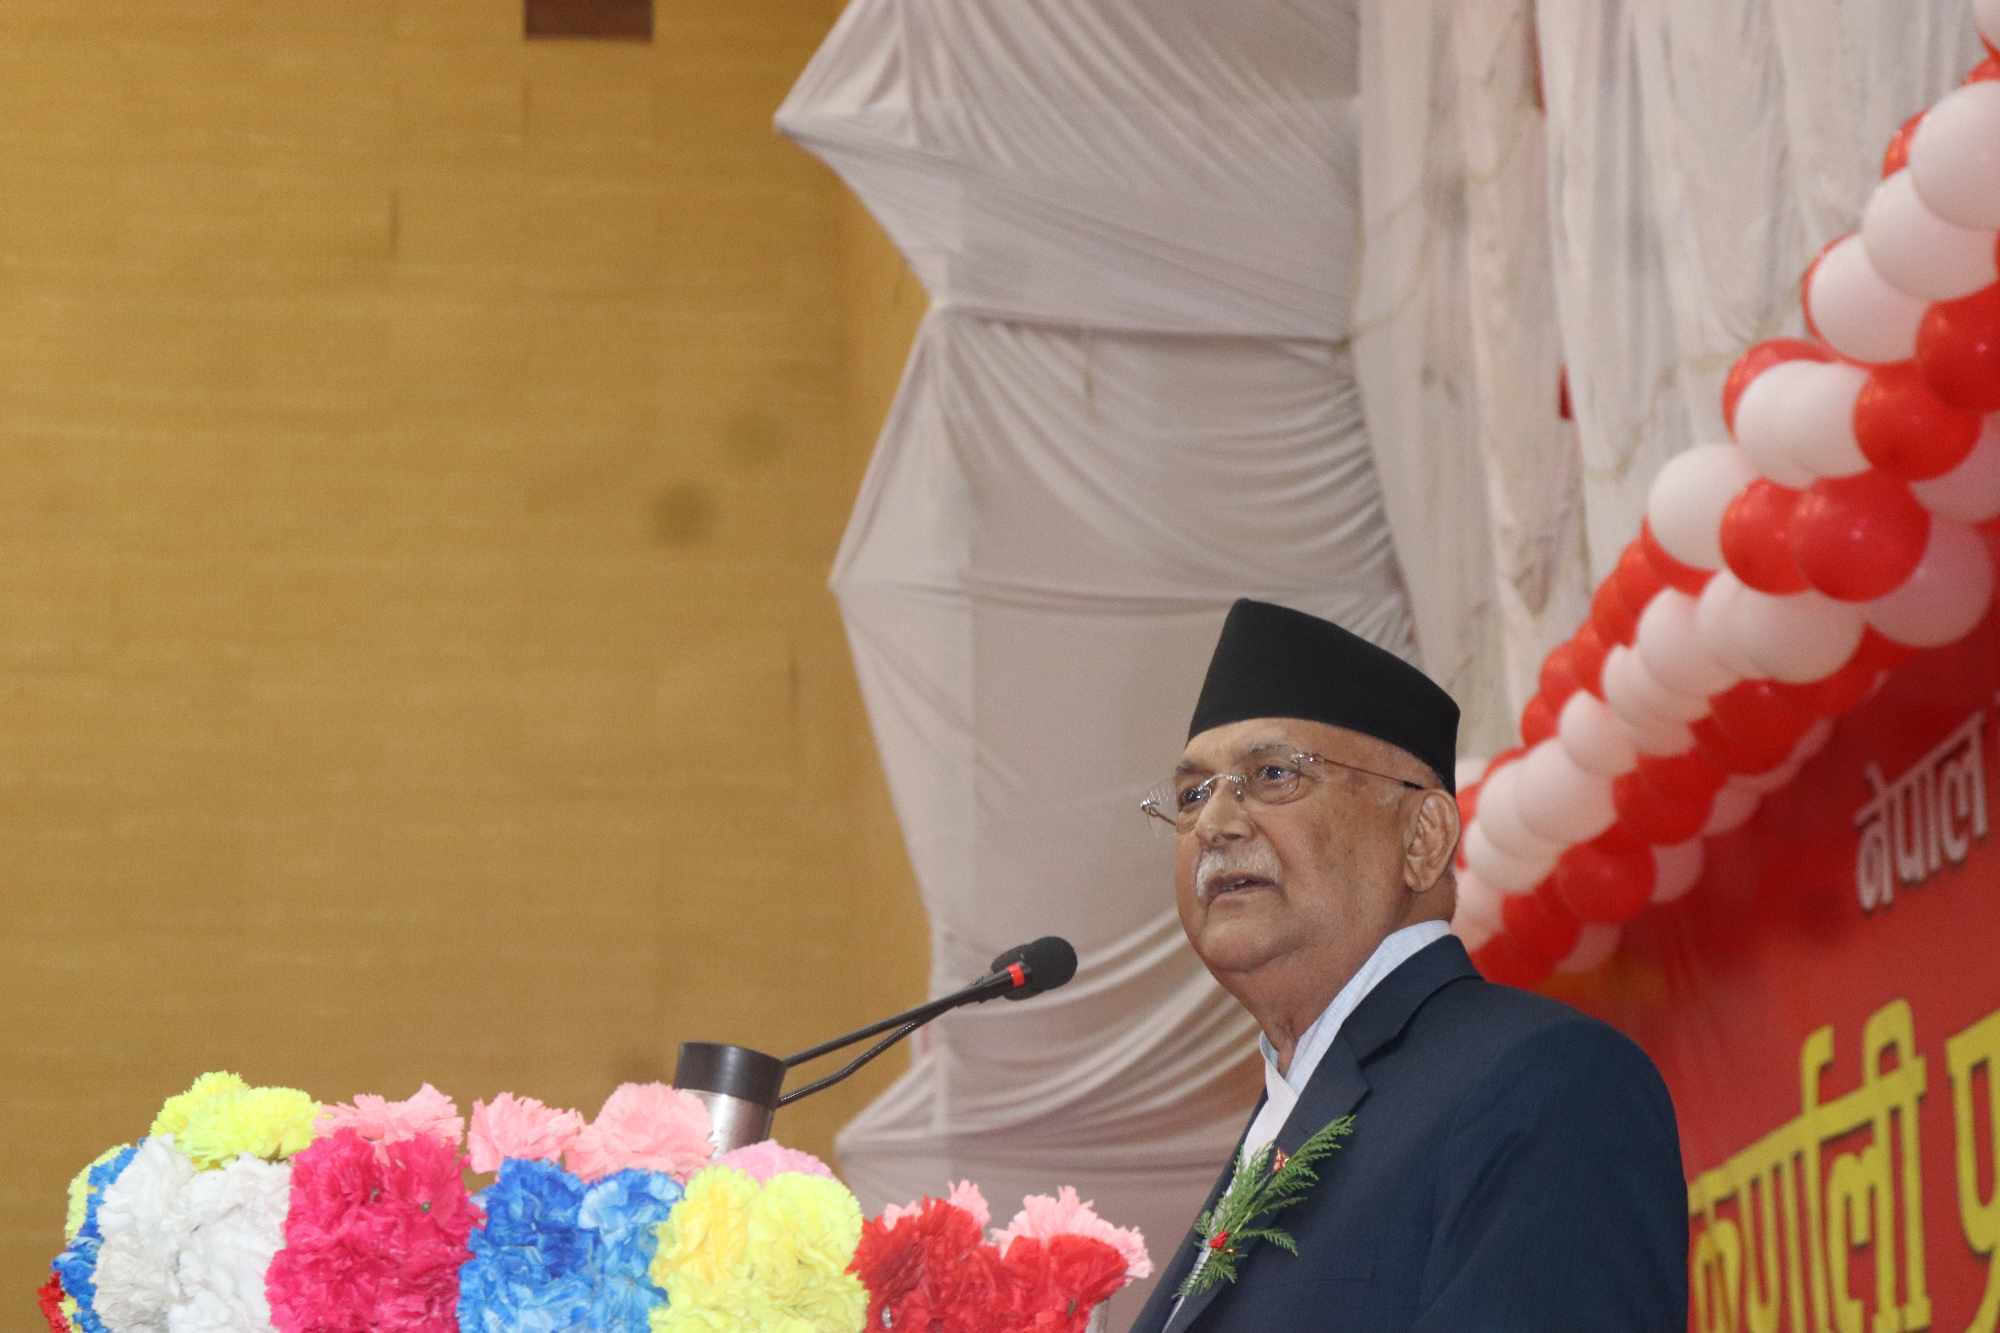 समृद्ध नेपाल निर्माण गर्ने पार्टीविरुद्ध घेराबन्दी गरियो : अध्यक्ष ओली